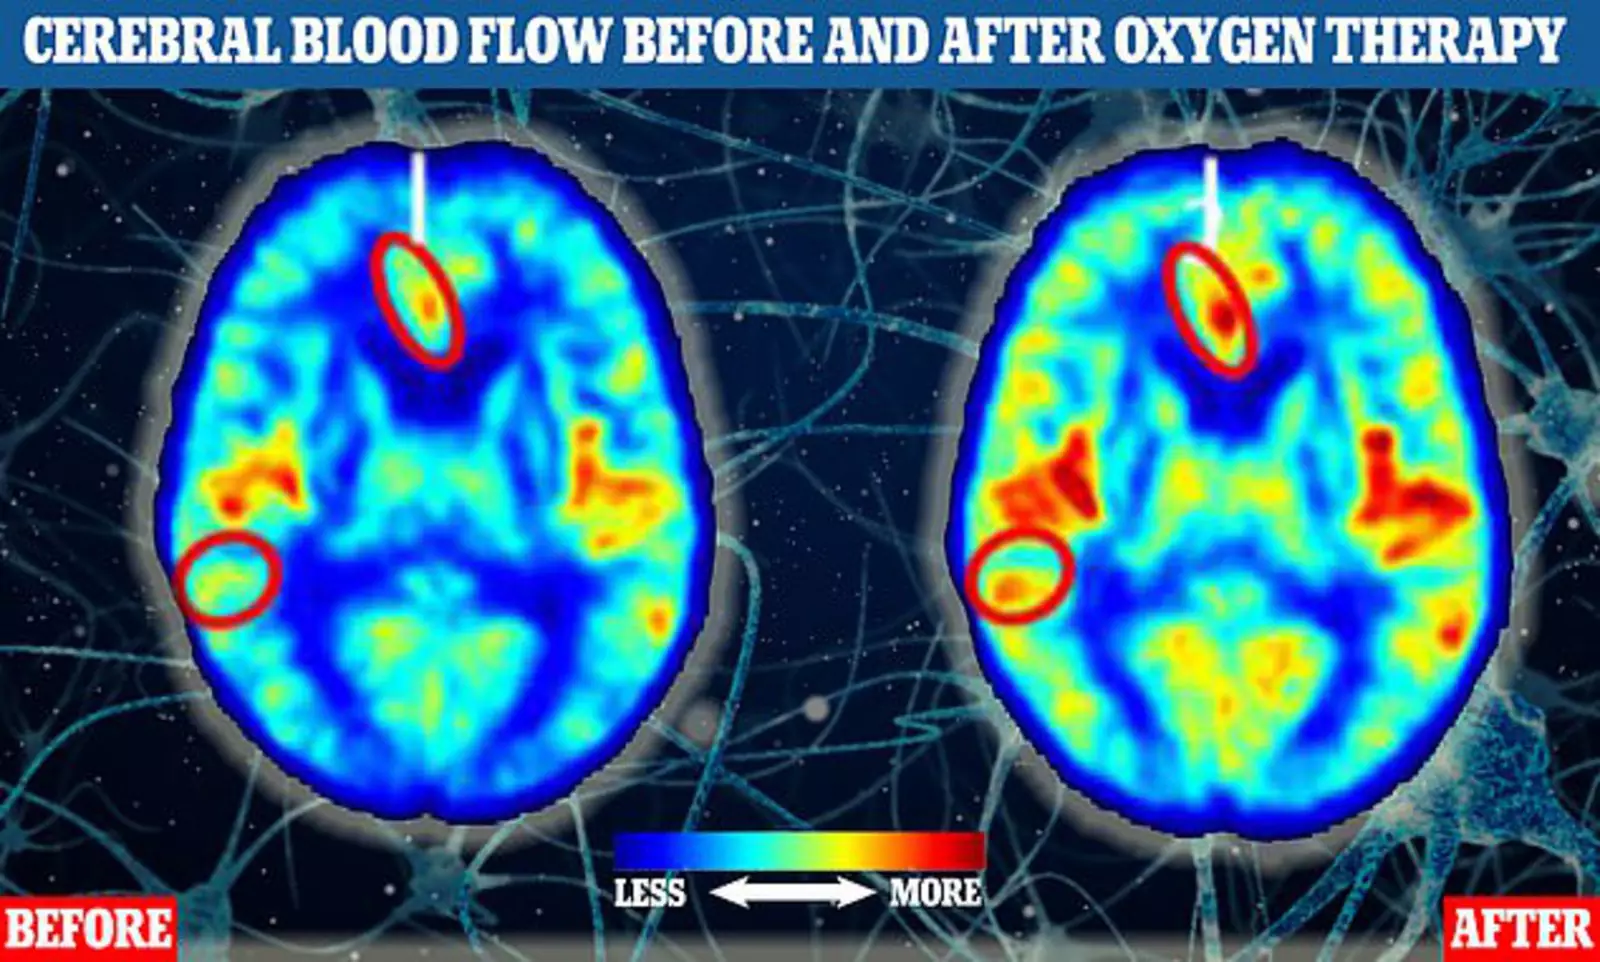 Два снимка МРТ головного мозга участников исследования показывают кровоток до (слева) и после (справа) одного из участников исследования кислородной терапии. Области, где больше желтых, оранжевых и красных тонов, указывают на более высокий уровень кровотока. 